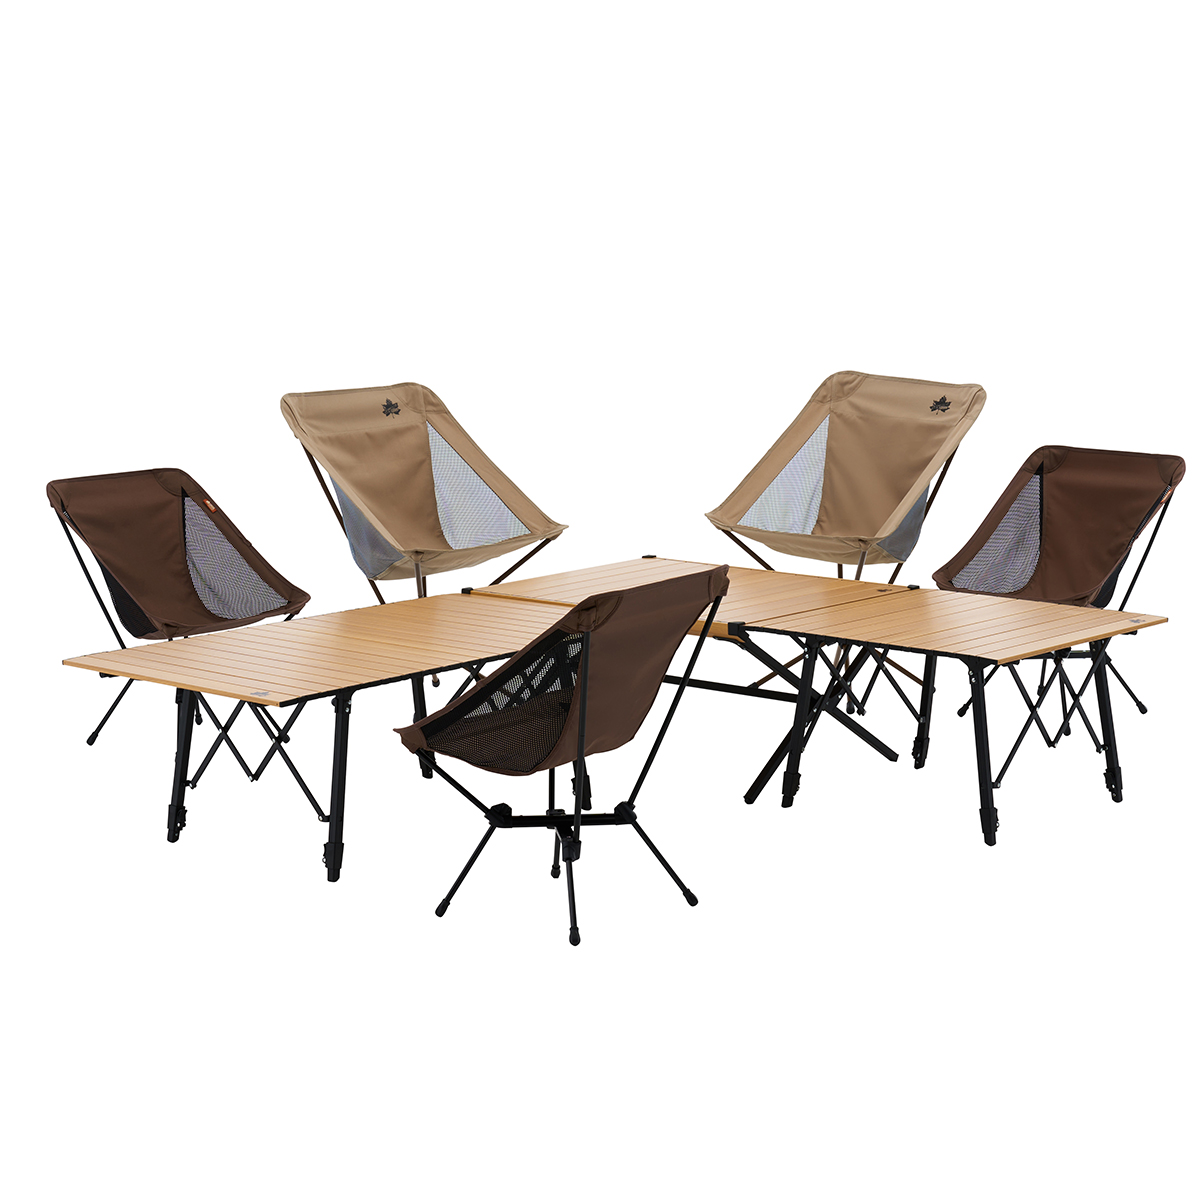 丸洗いウッディオートテーブル 12070-BC|ギア|家具|テーブル|製品情報|ロゴスショップ公式オンライン